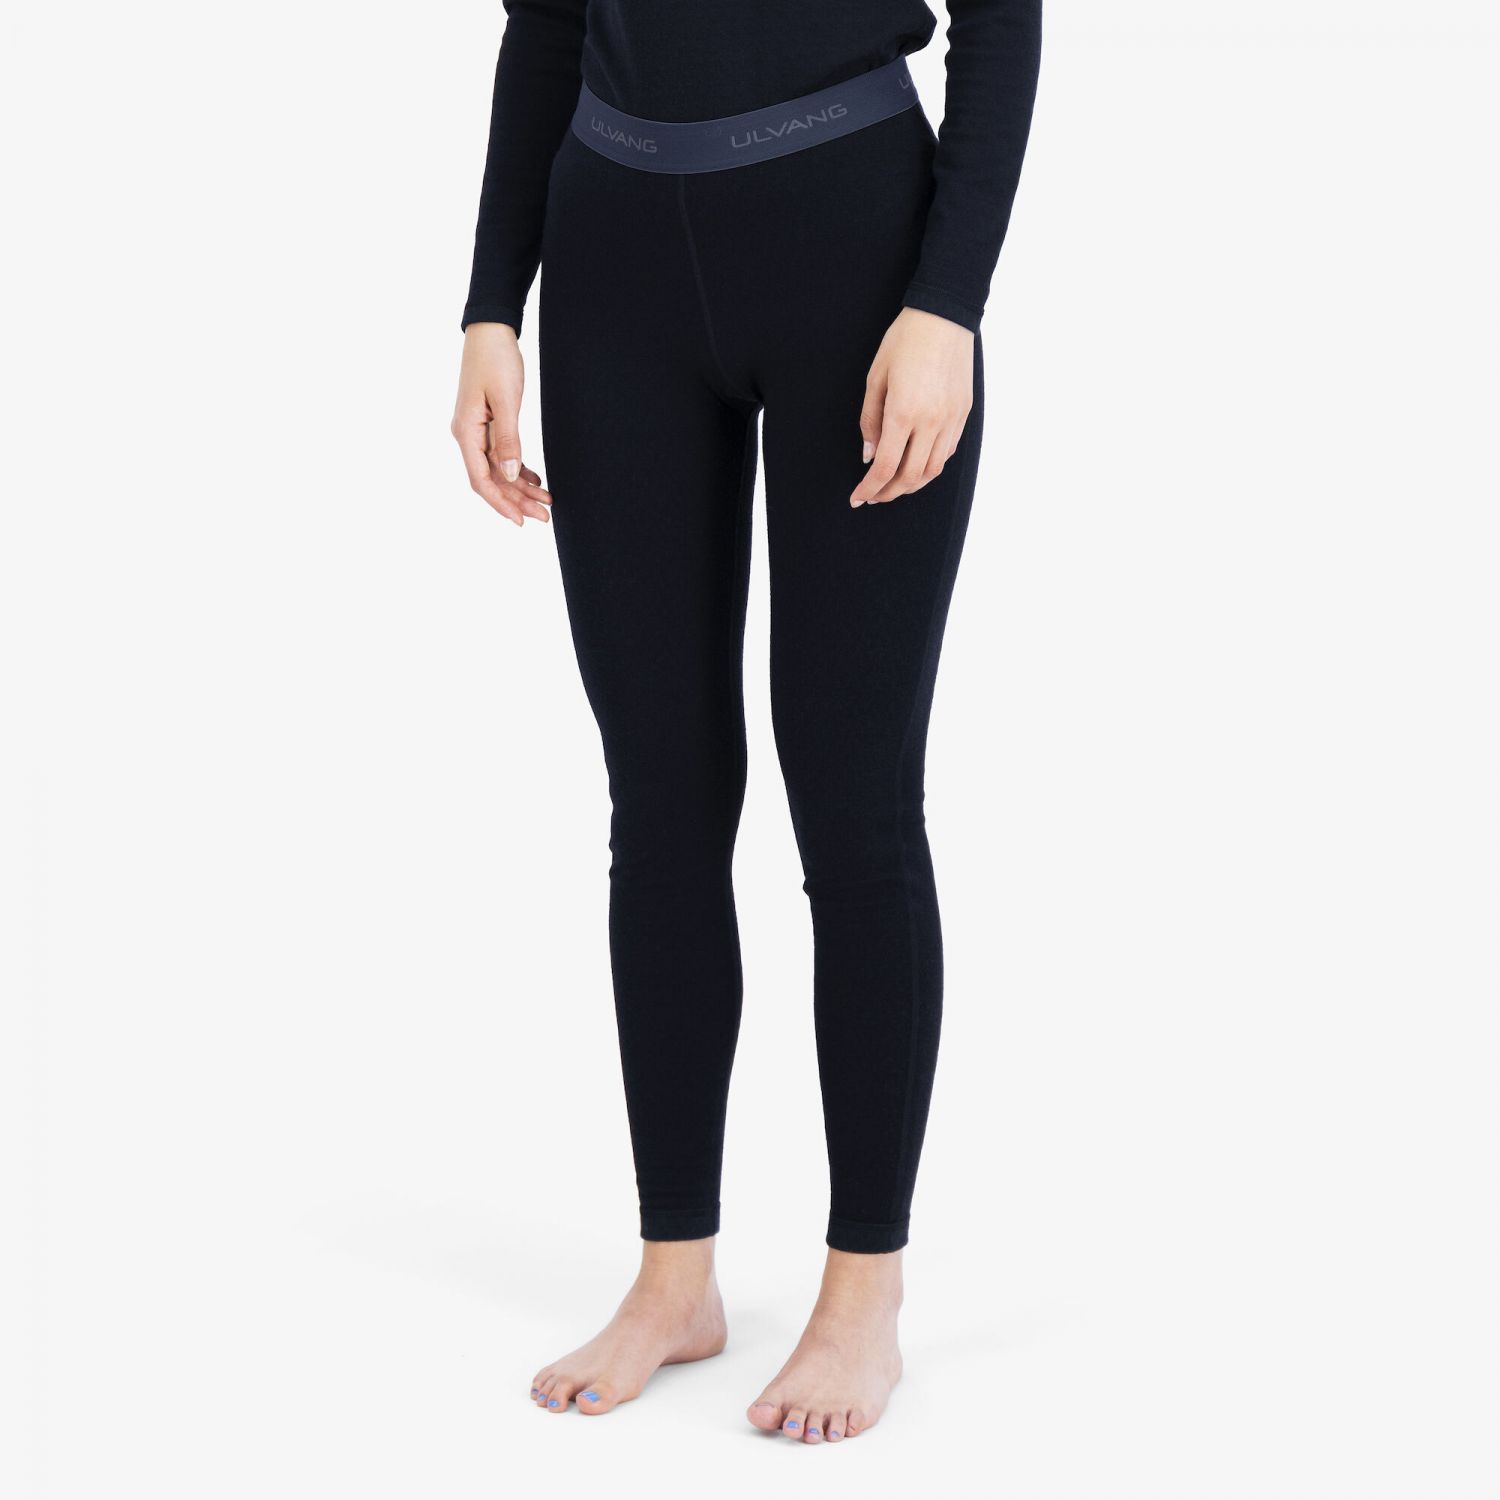 Ulvang Comfort 200, ski underpants, women, black